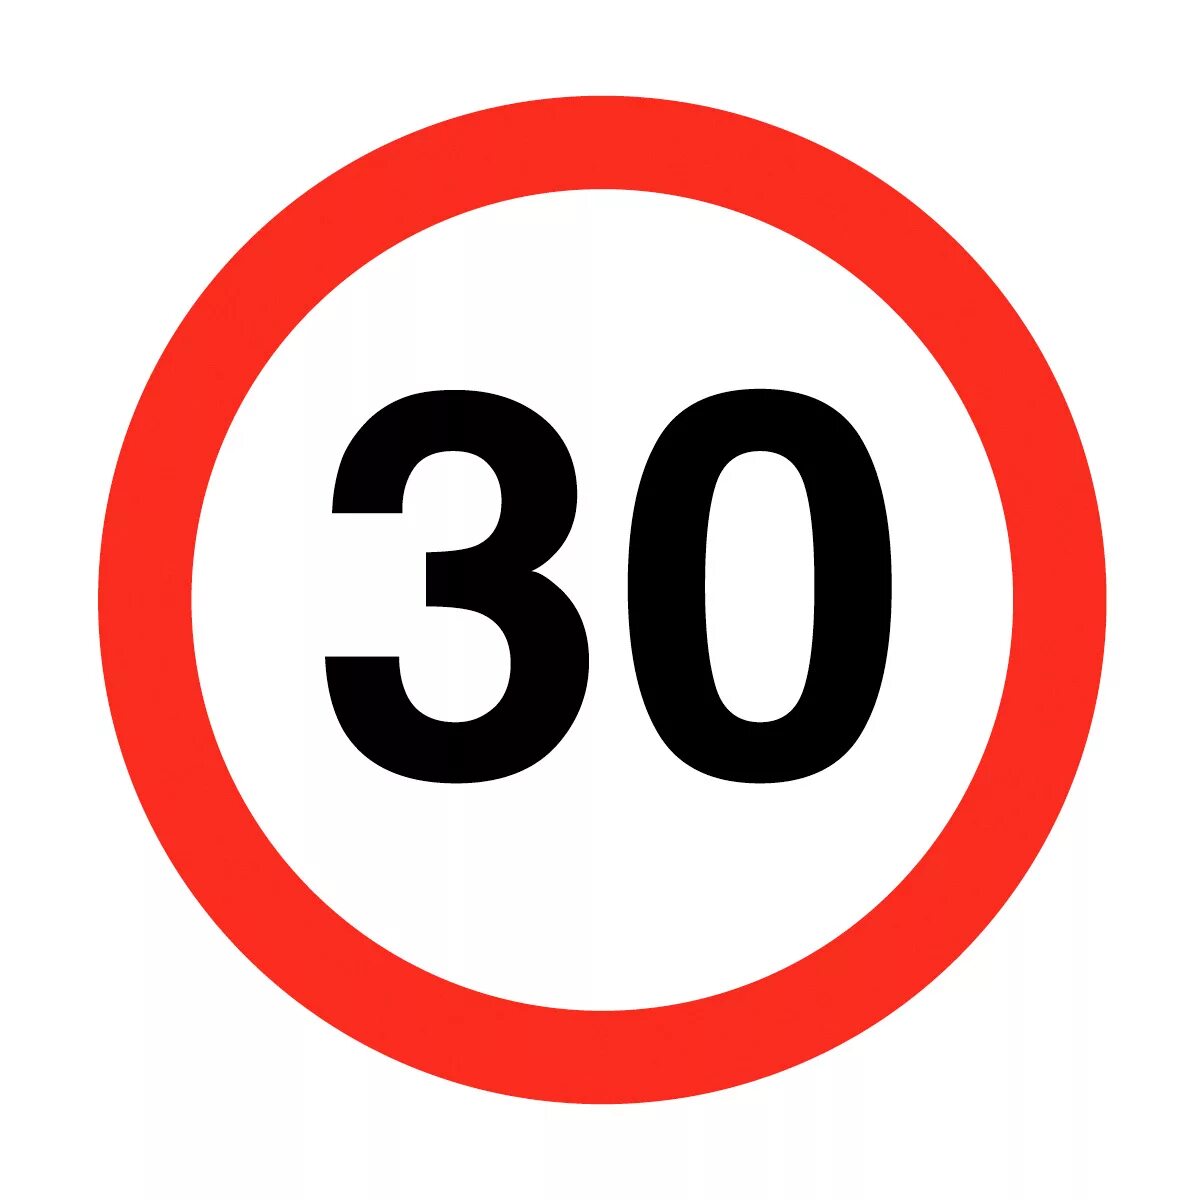 Числа на дорожных знаках. Дорожный знак ограничение скорости 30 км. Дорожный знак 80. Скорость 30 км/ч. Дорожный знак ограничение скорости 20 км.